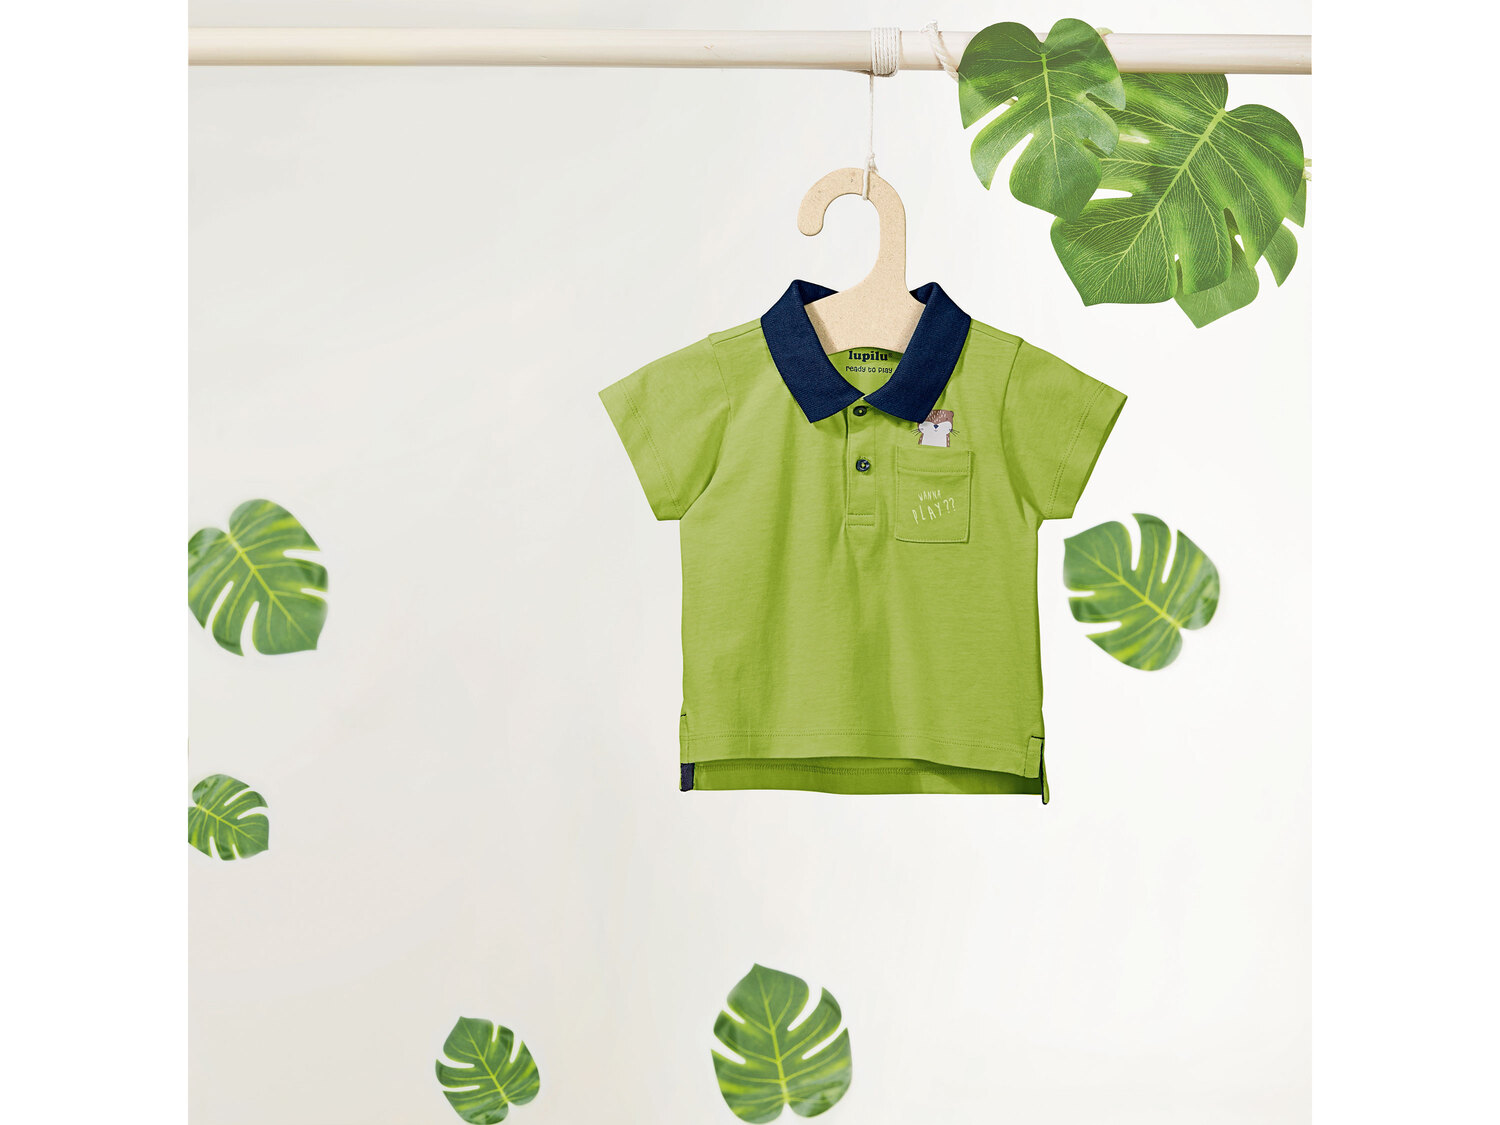 Koszulka dziecięca z biobawełny , cena 12,99 PLN 
- 100% biobawełny
- rozmiary: ...